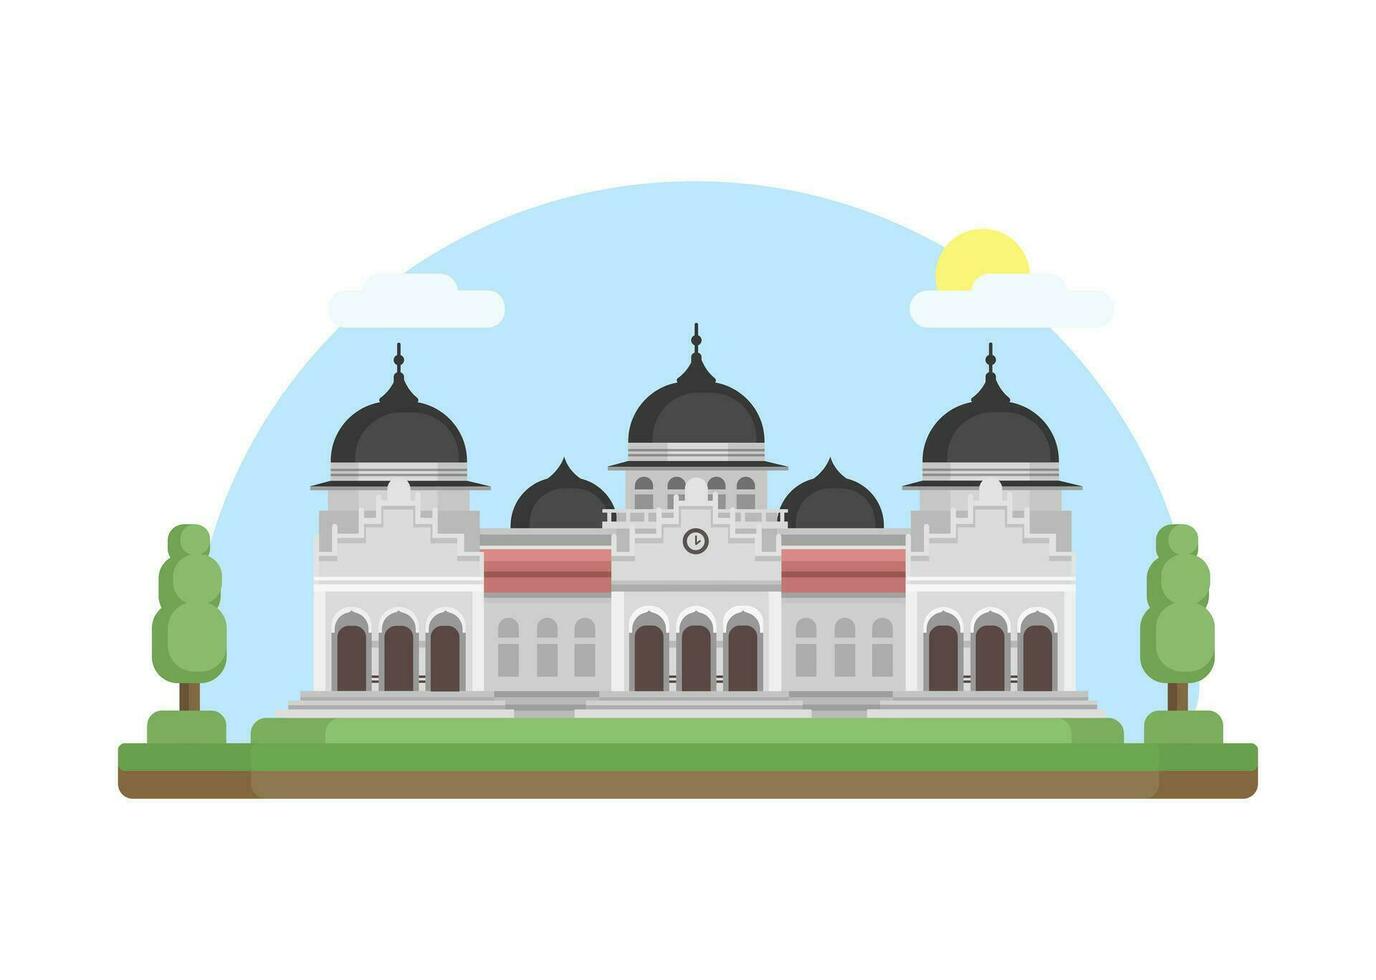 baiturrahman grandioso mezquita aceh, Indonesia punto de referencia edificio plano diseño ilustración vector